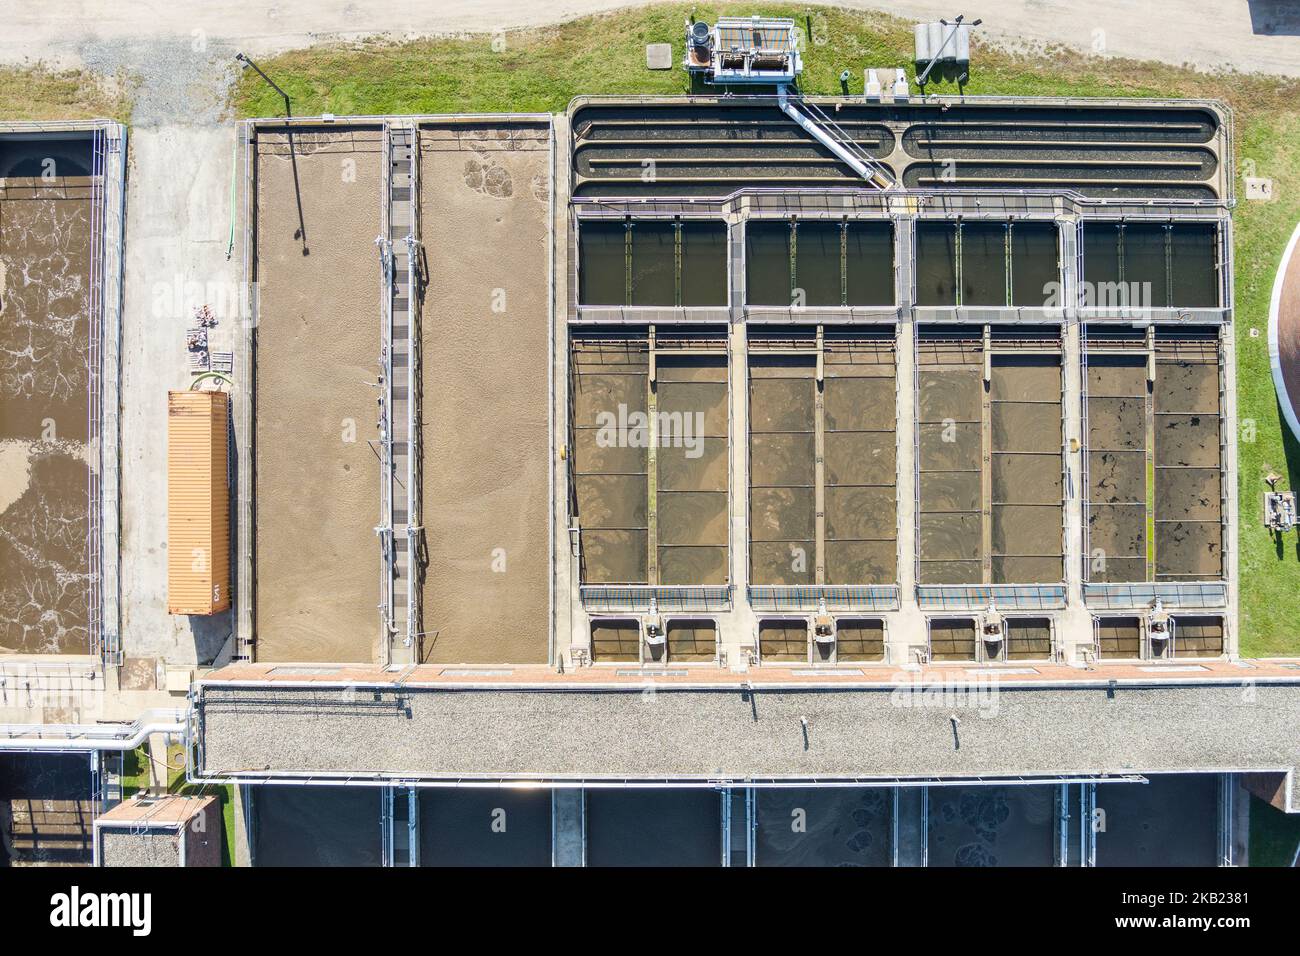 Vista aérea de la instalación de tratamiento de aguas residuales, Norristown, Pensilvania, EE.UU Foto de stock